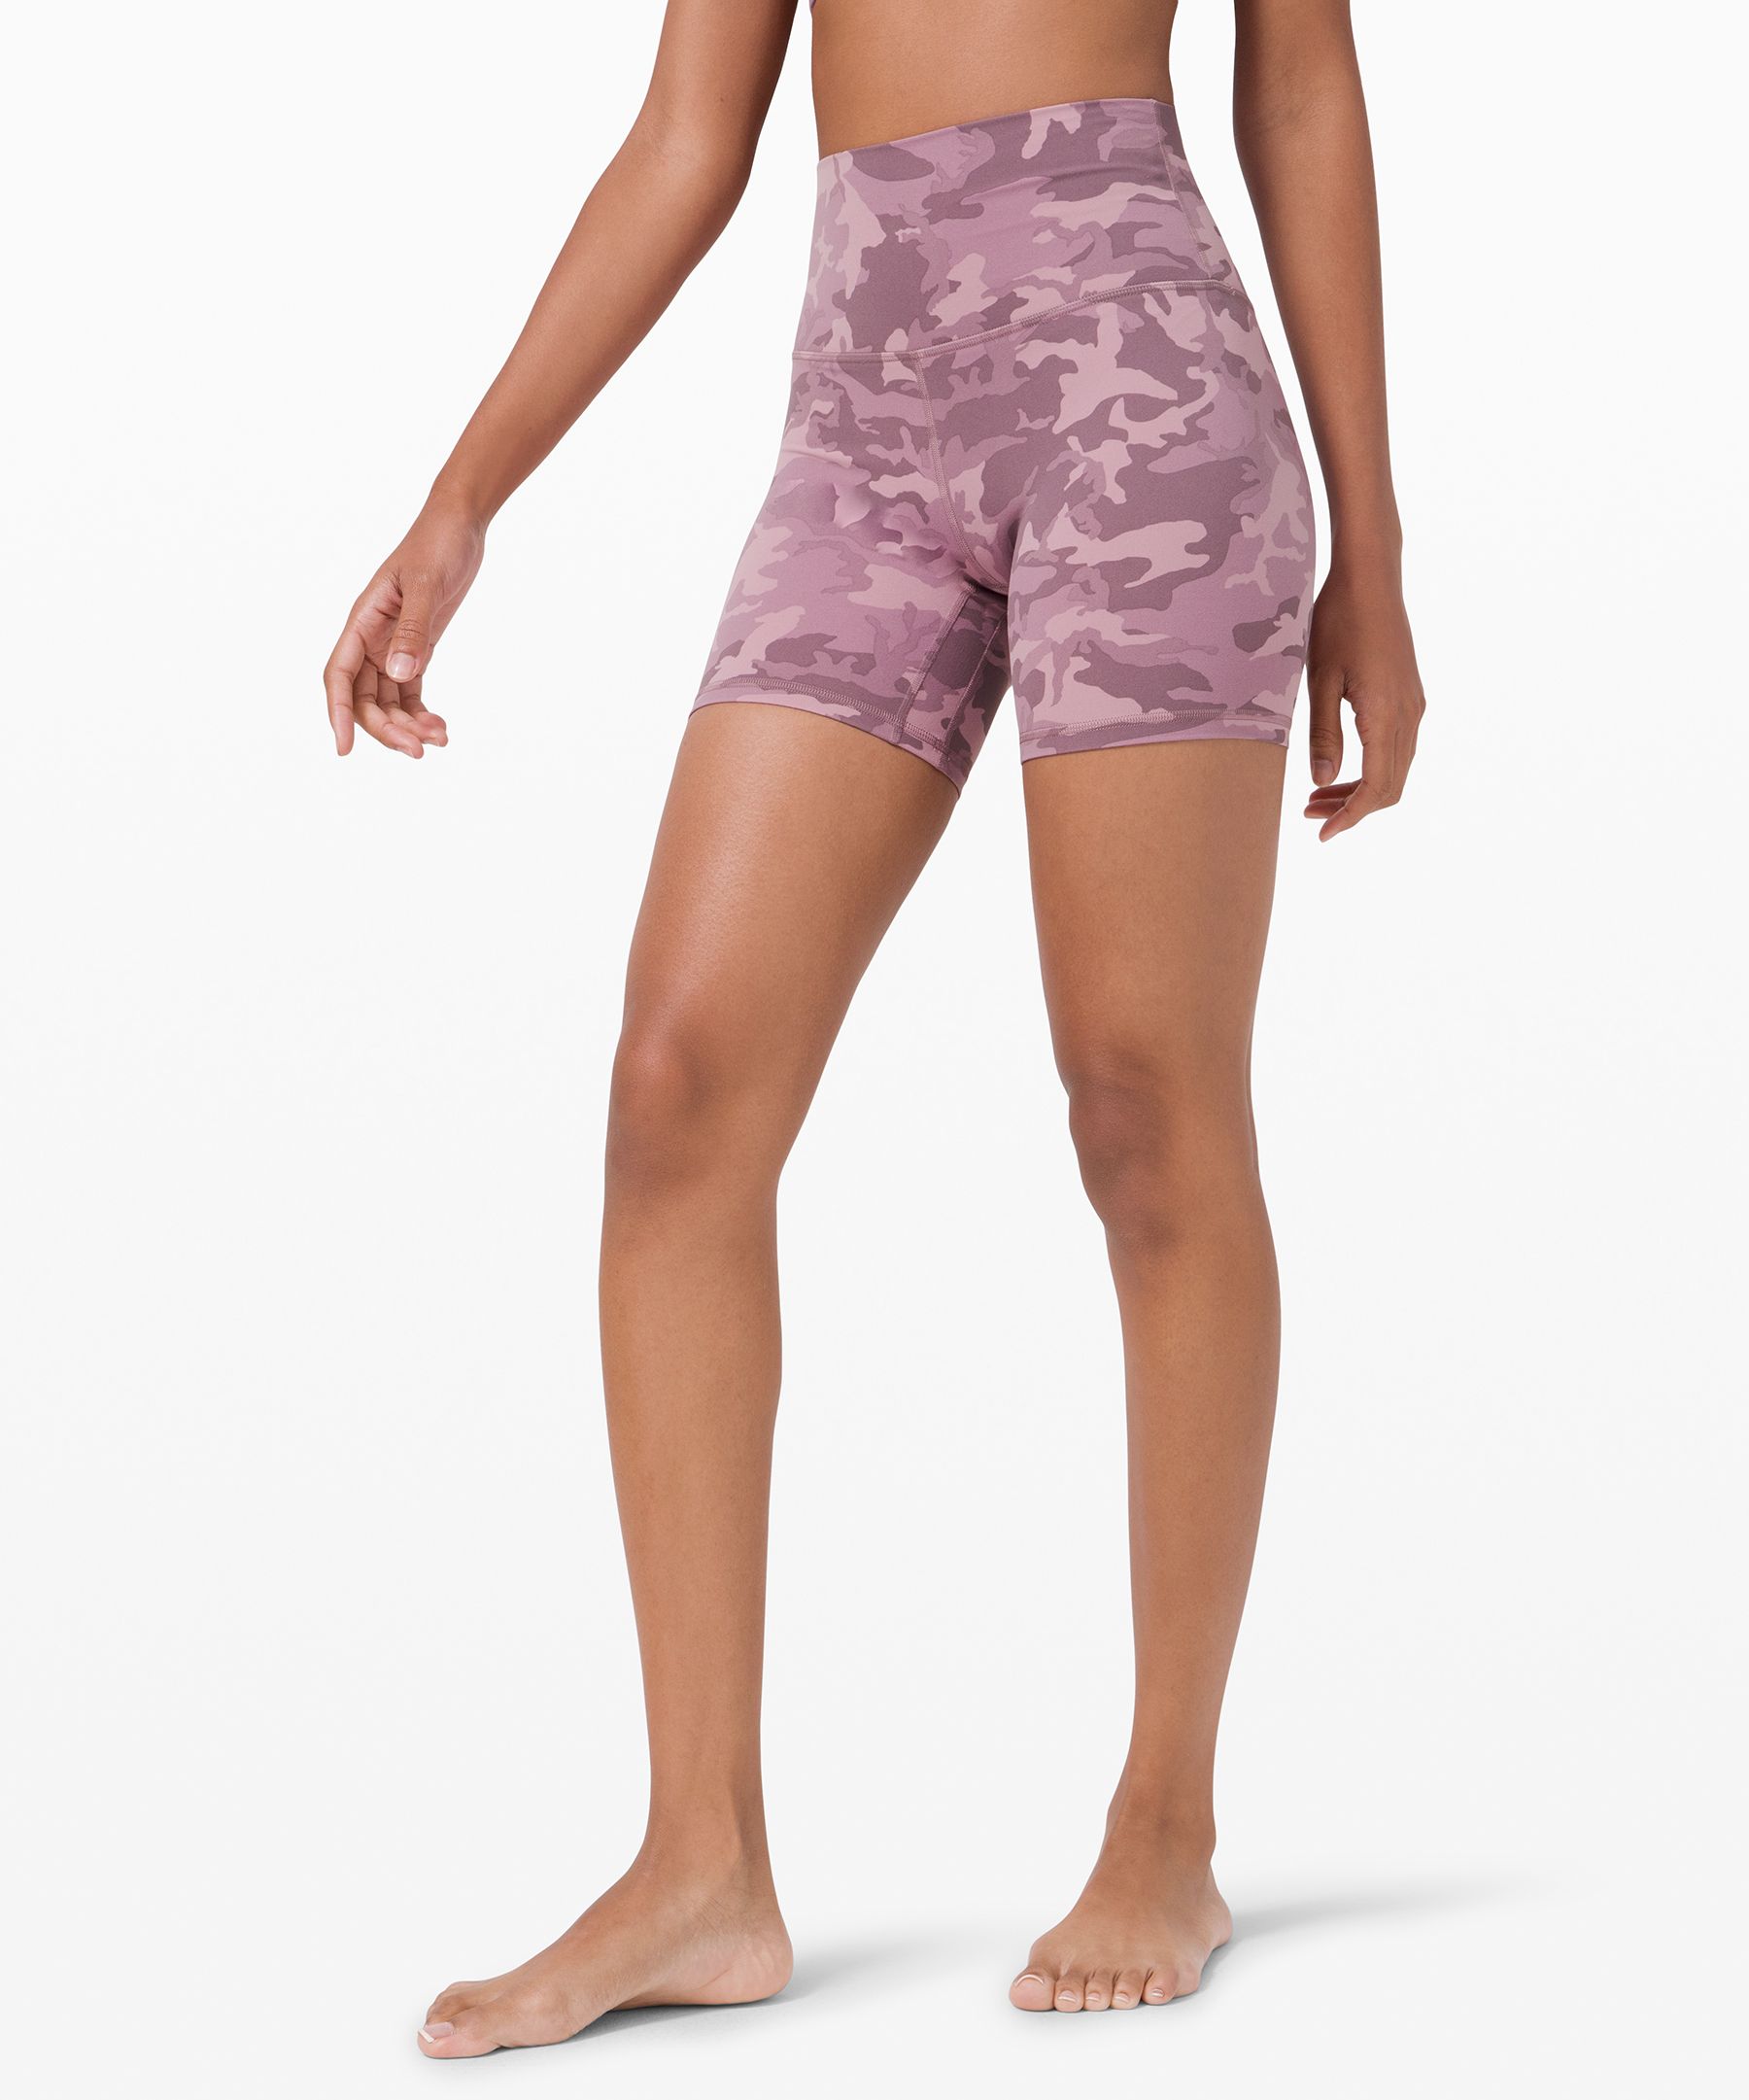 lululemon shorts pink